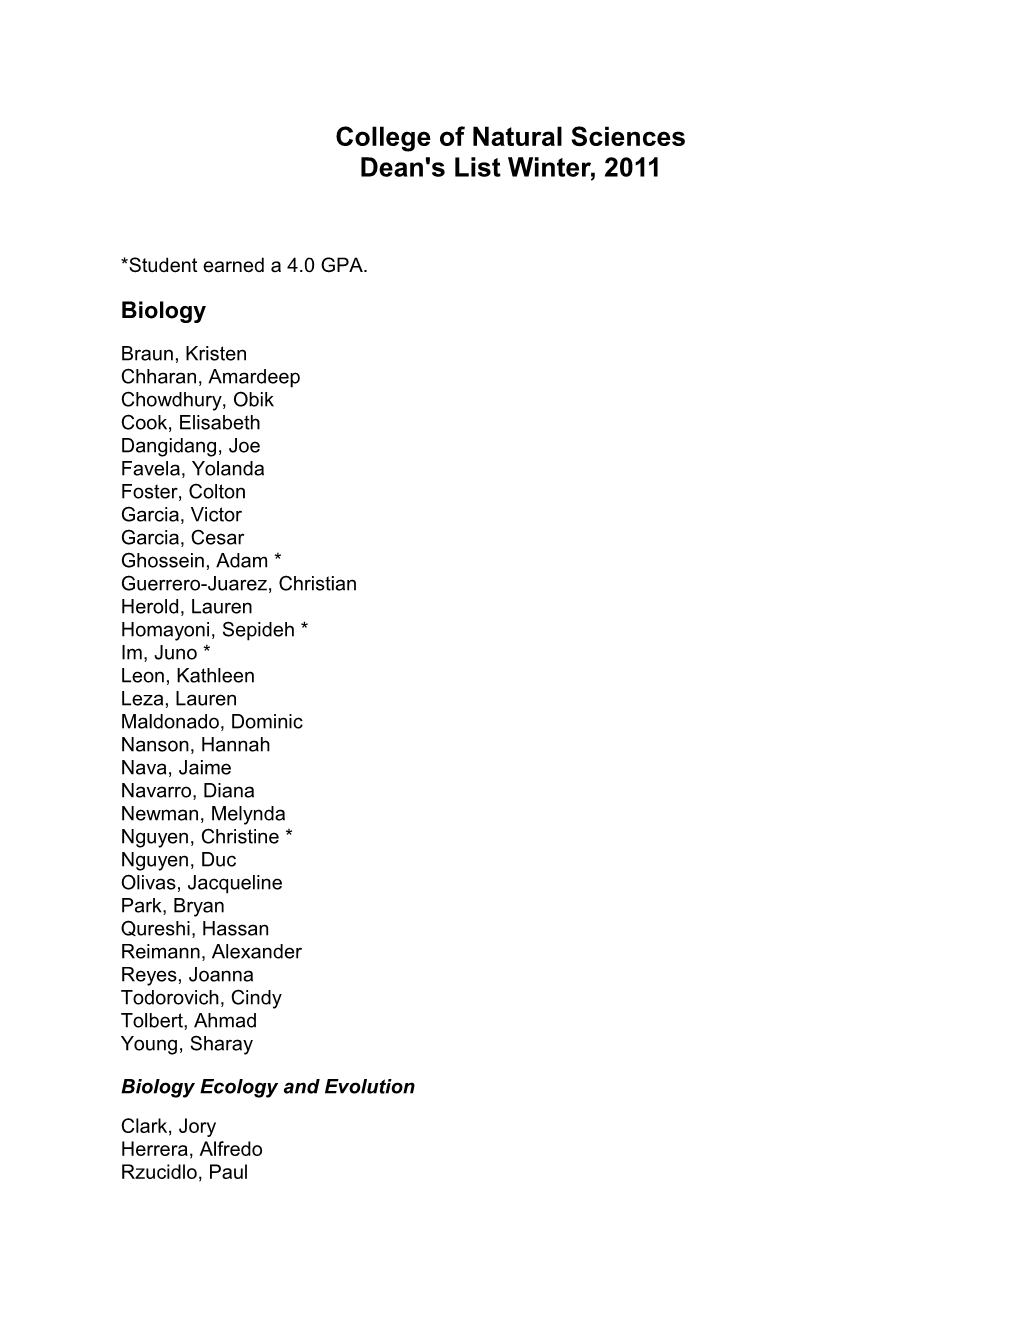 Dean's List Fall, 2008